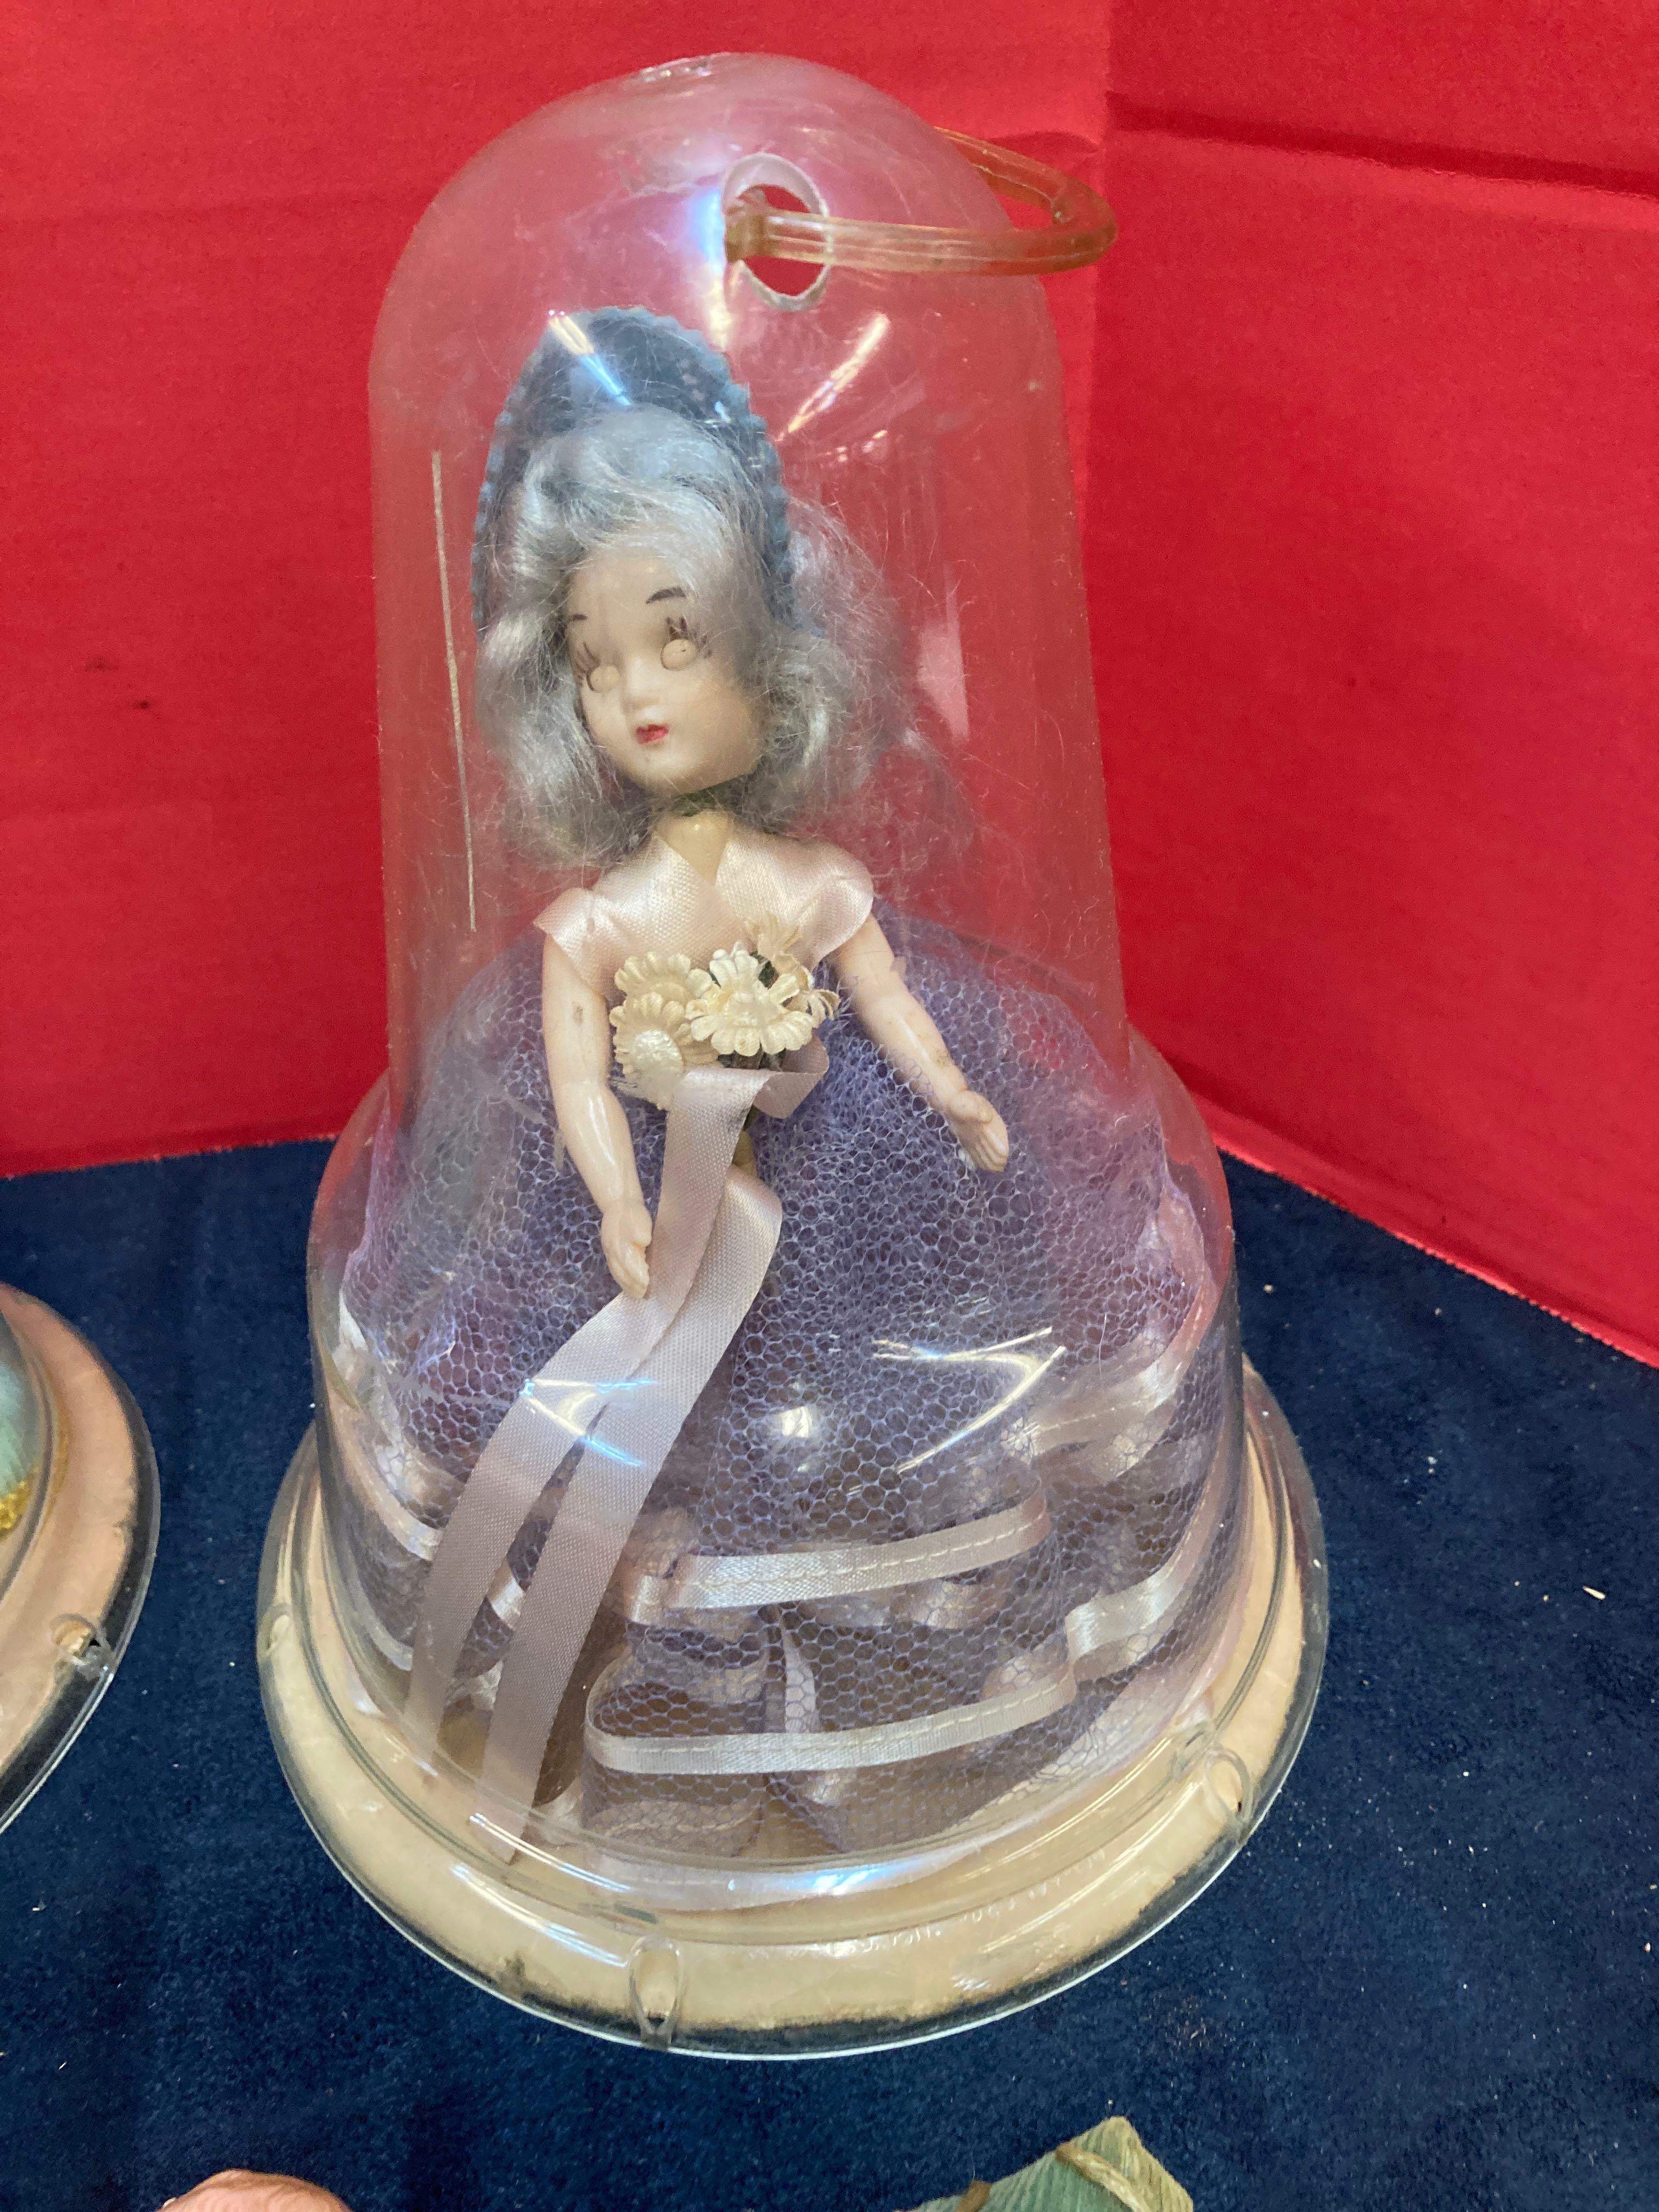 Vintage dolls and miniature dolls